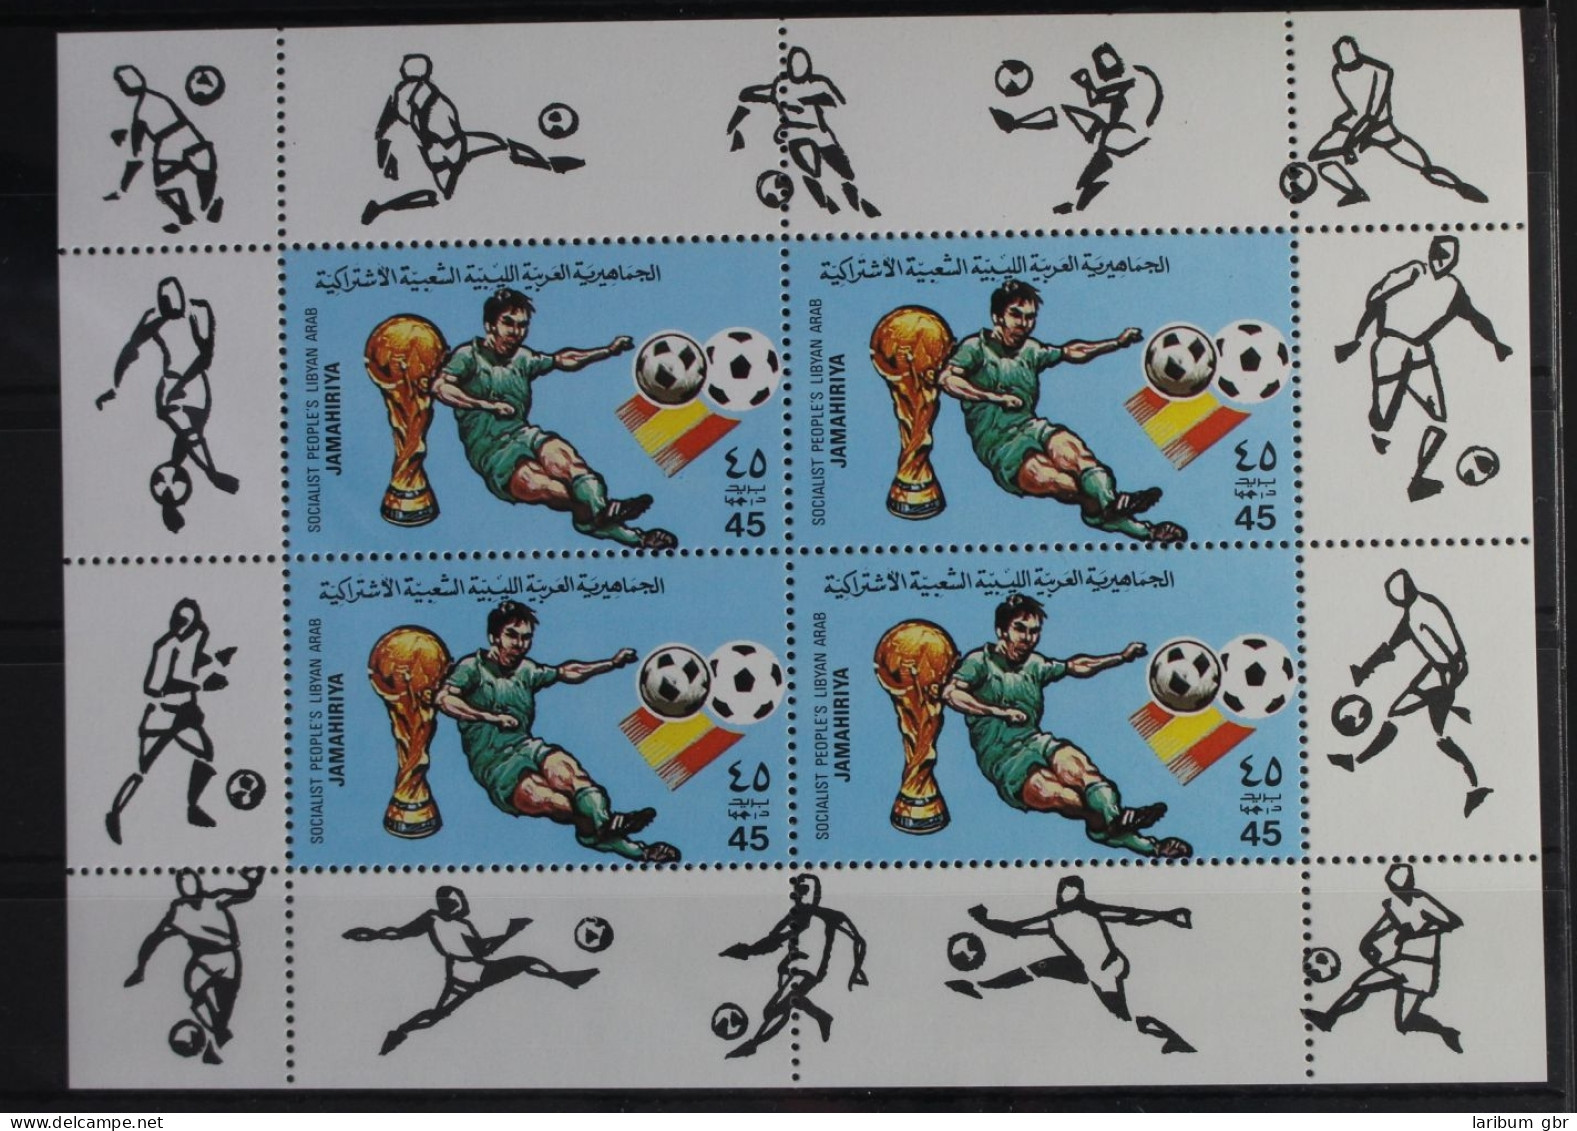 Libyen 990A Postfrisch Kleinbogensatz A, Fußball #WW272 - Libye